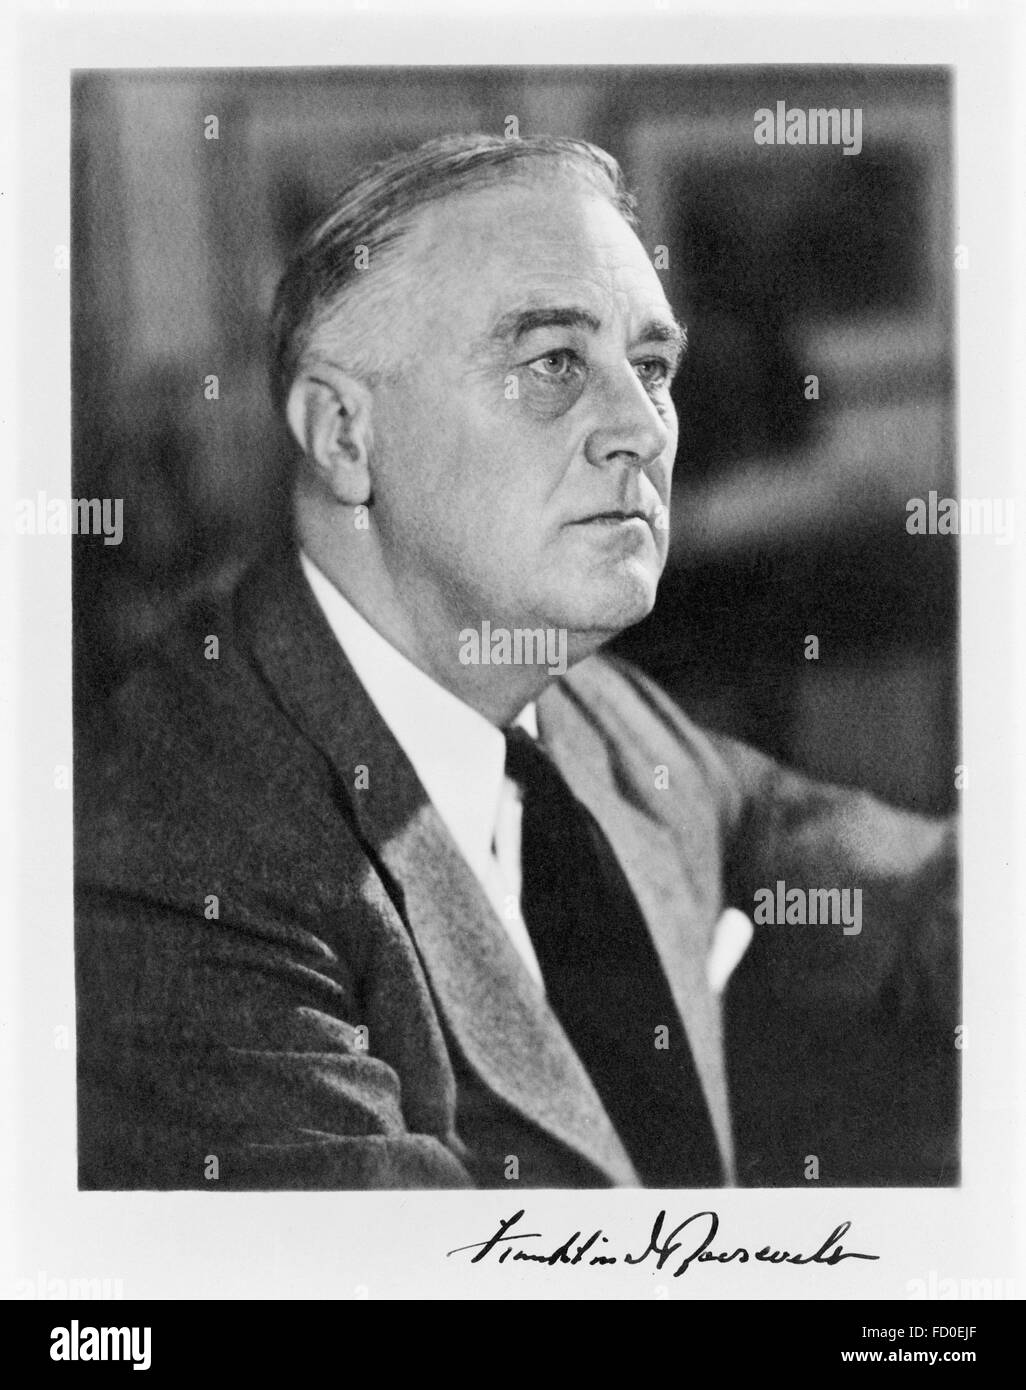 Franklin D Roosevelt Signed Portrait Of Franklin D Roosevelt The 32nd